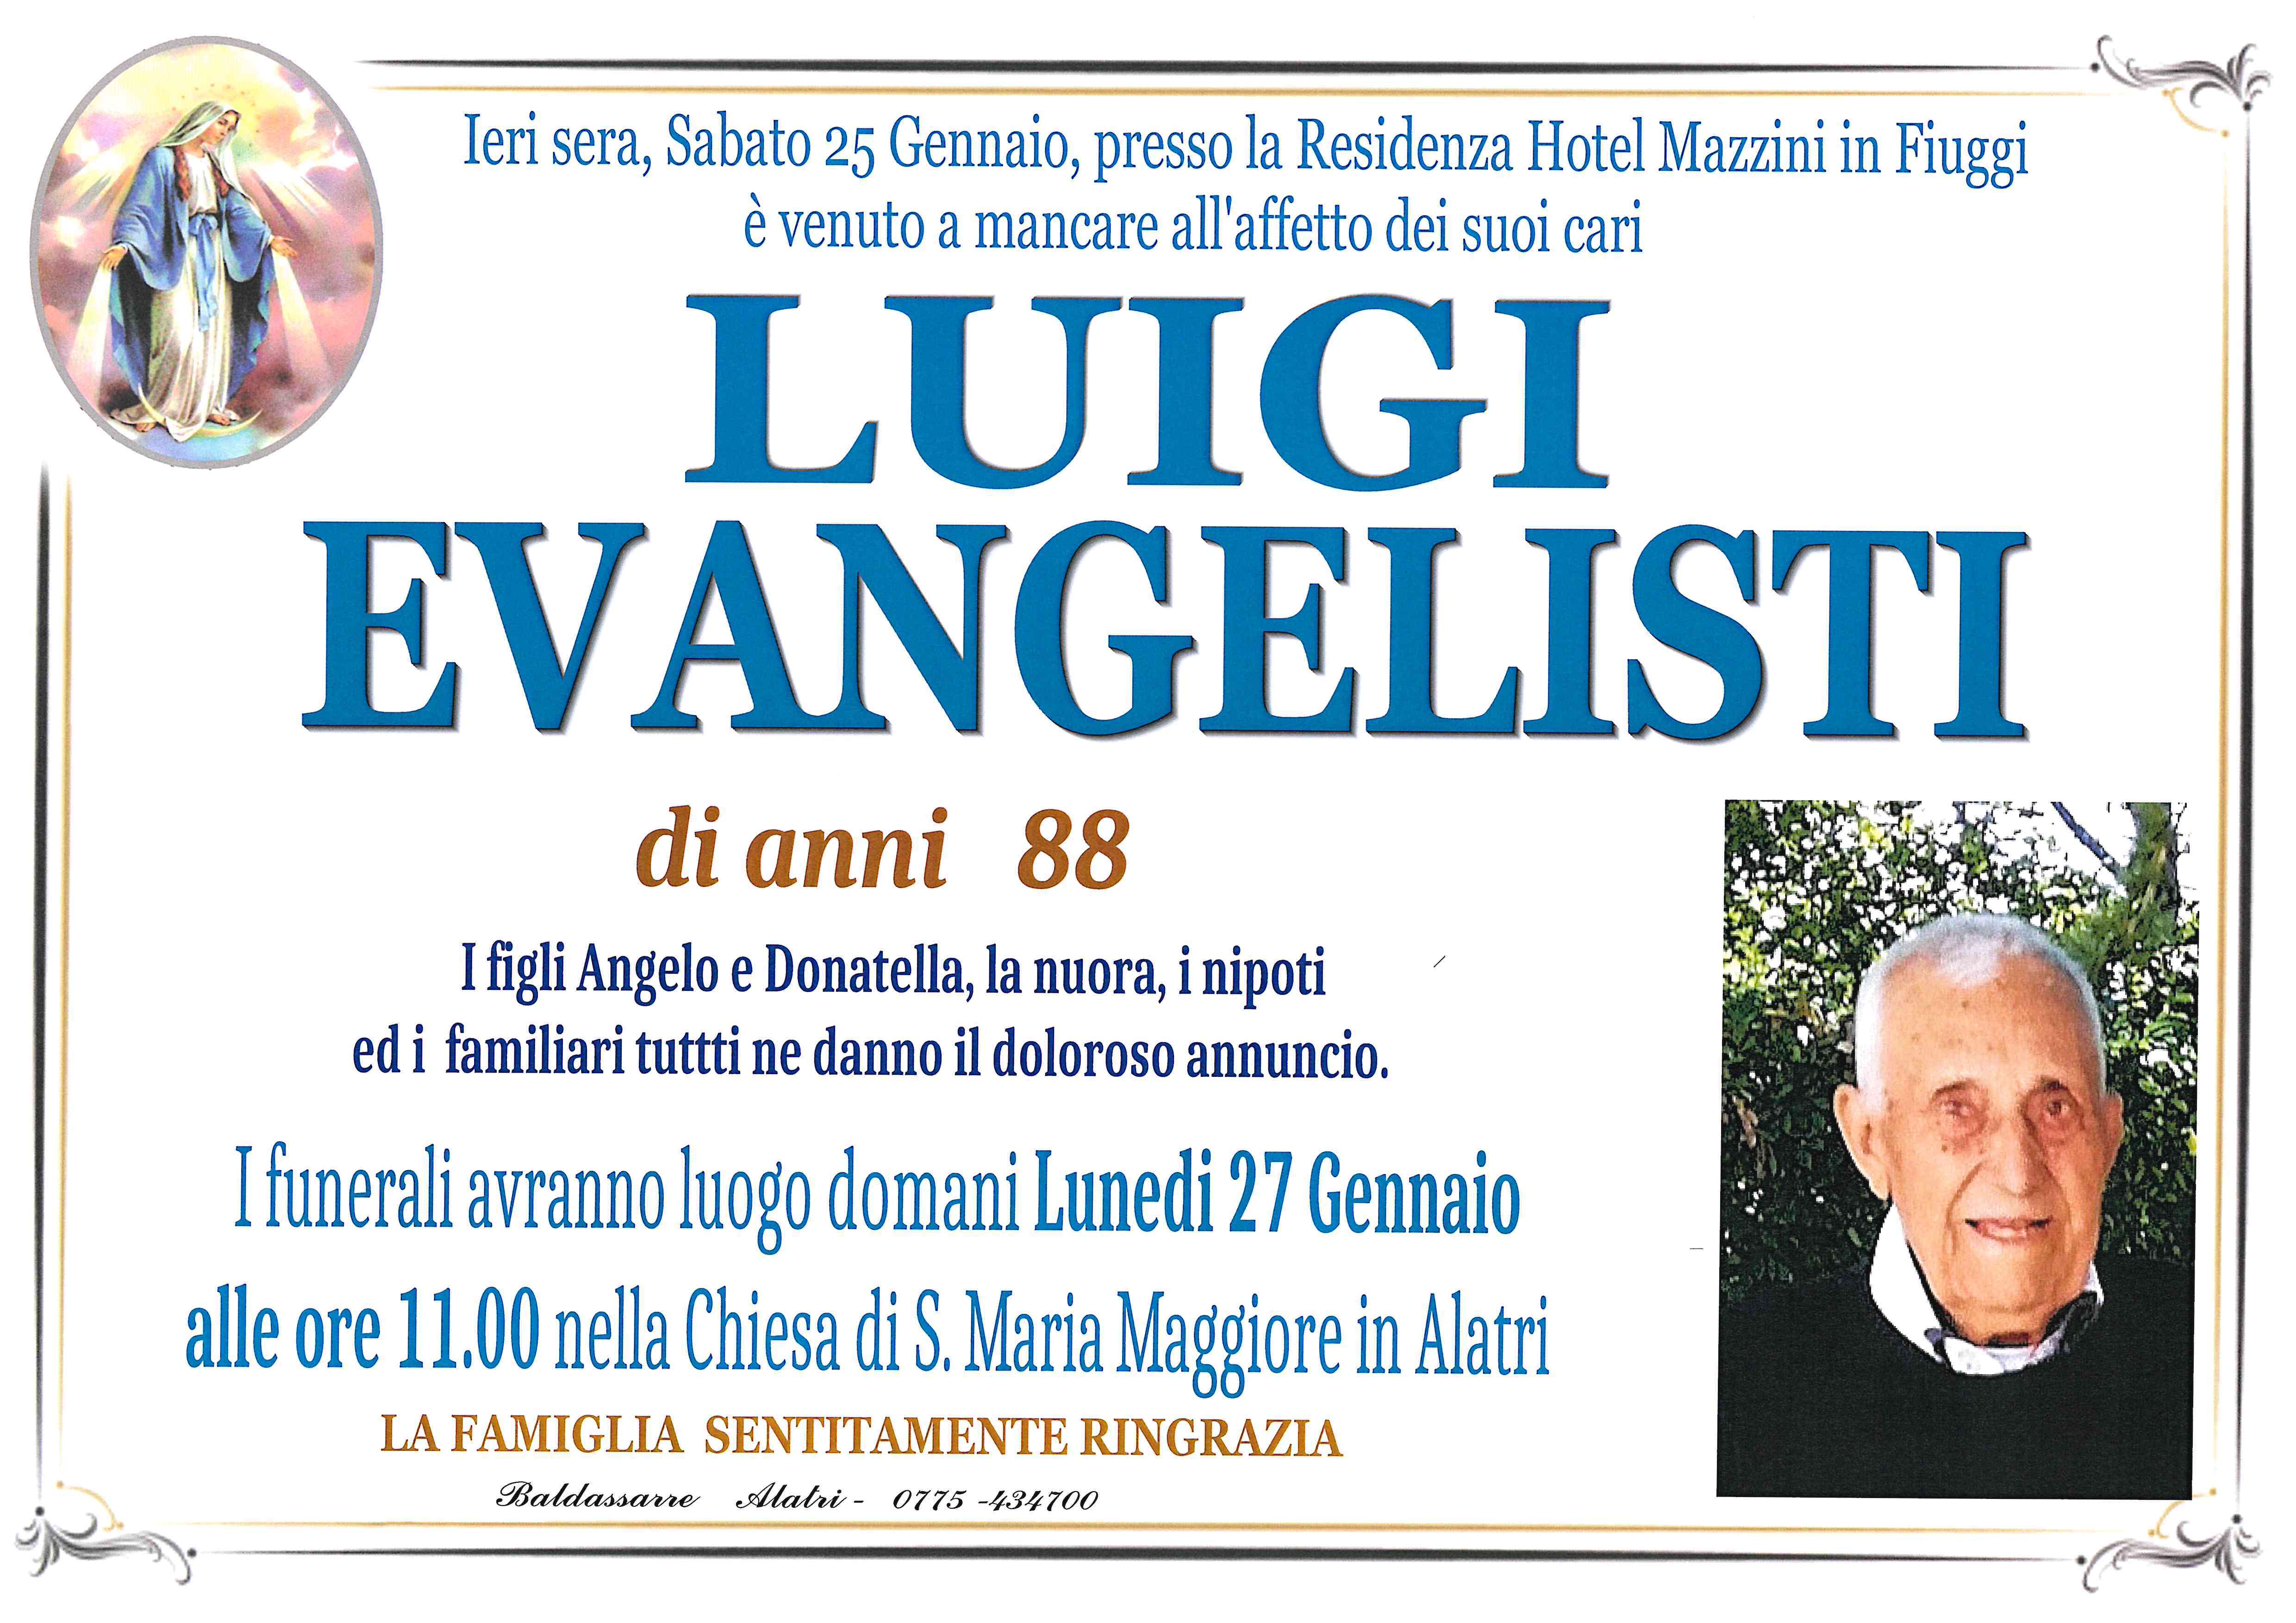 Luigi Evangelisti